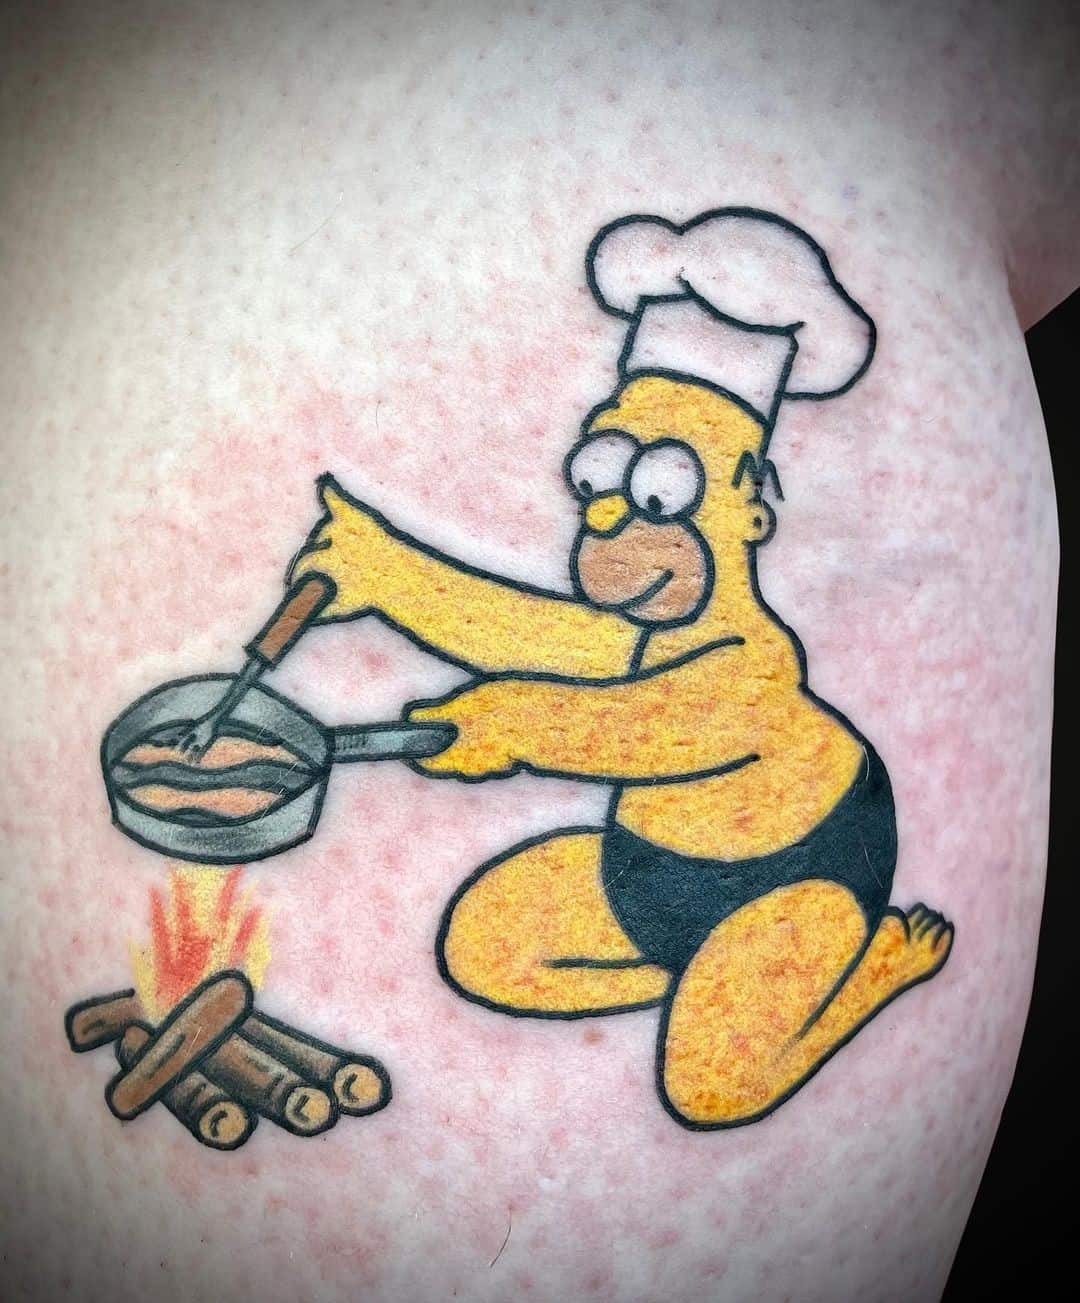 Tatuaje de fuego de los Simpson 